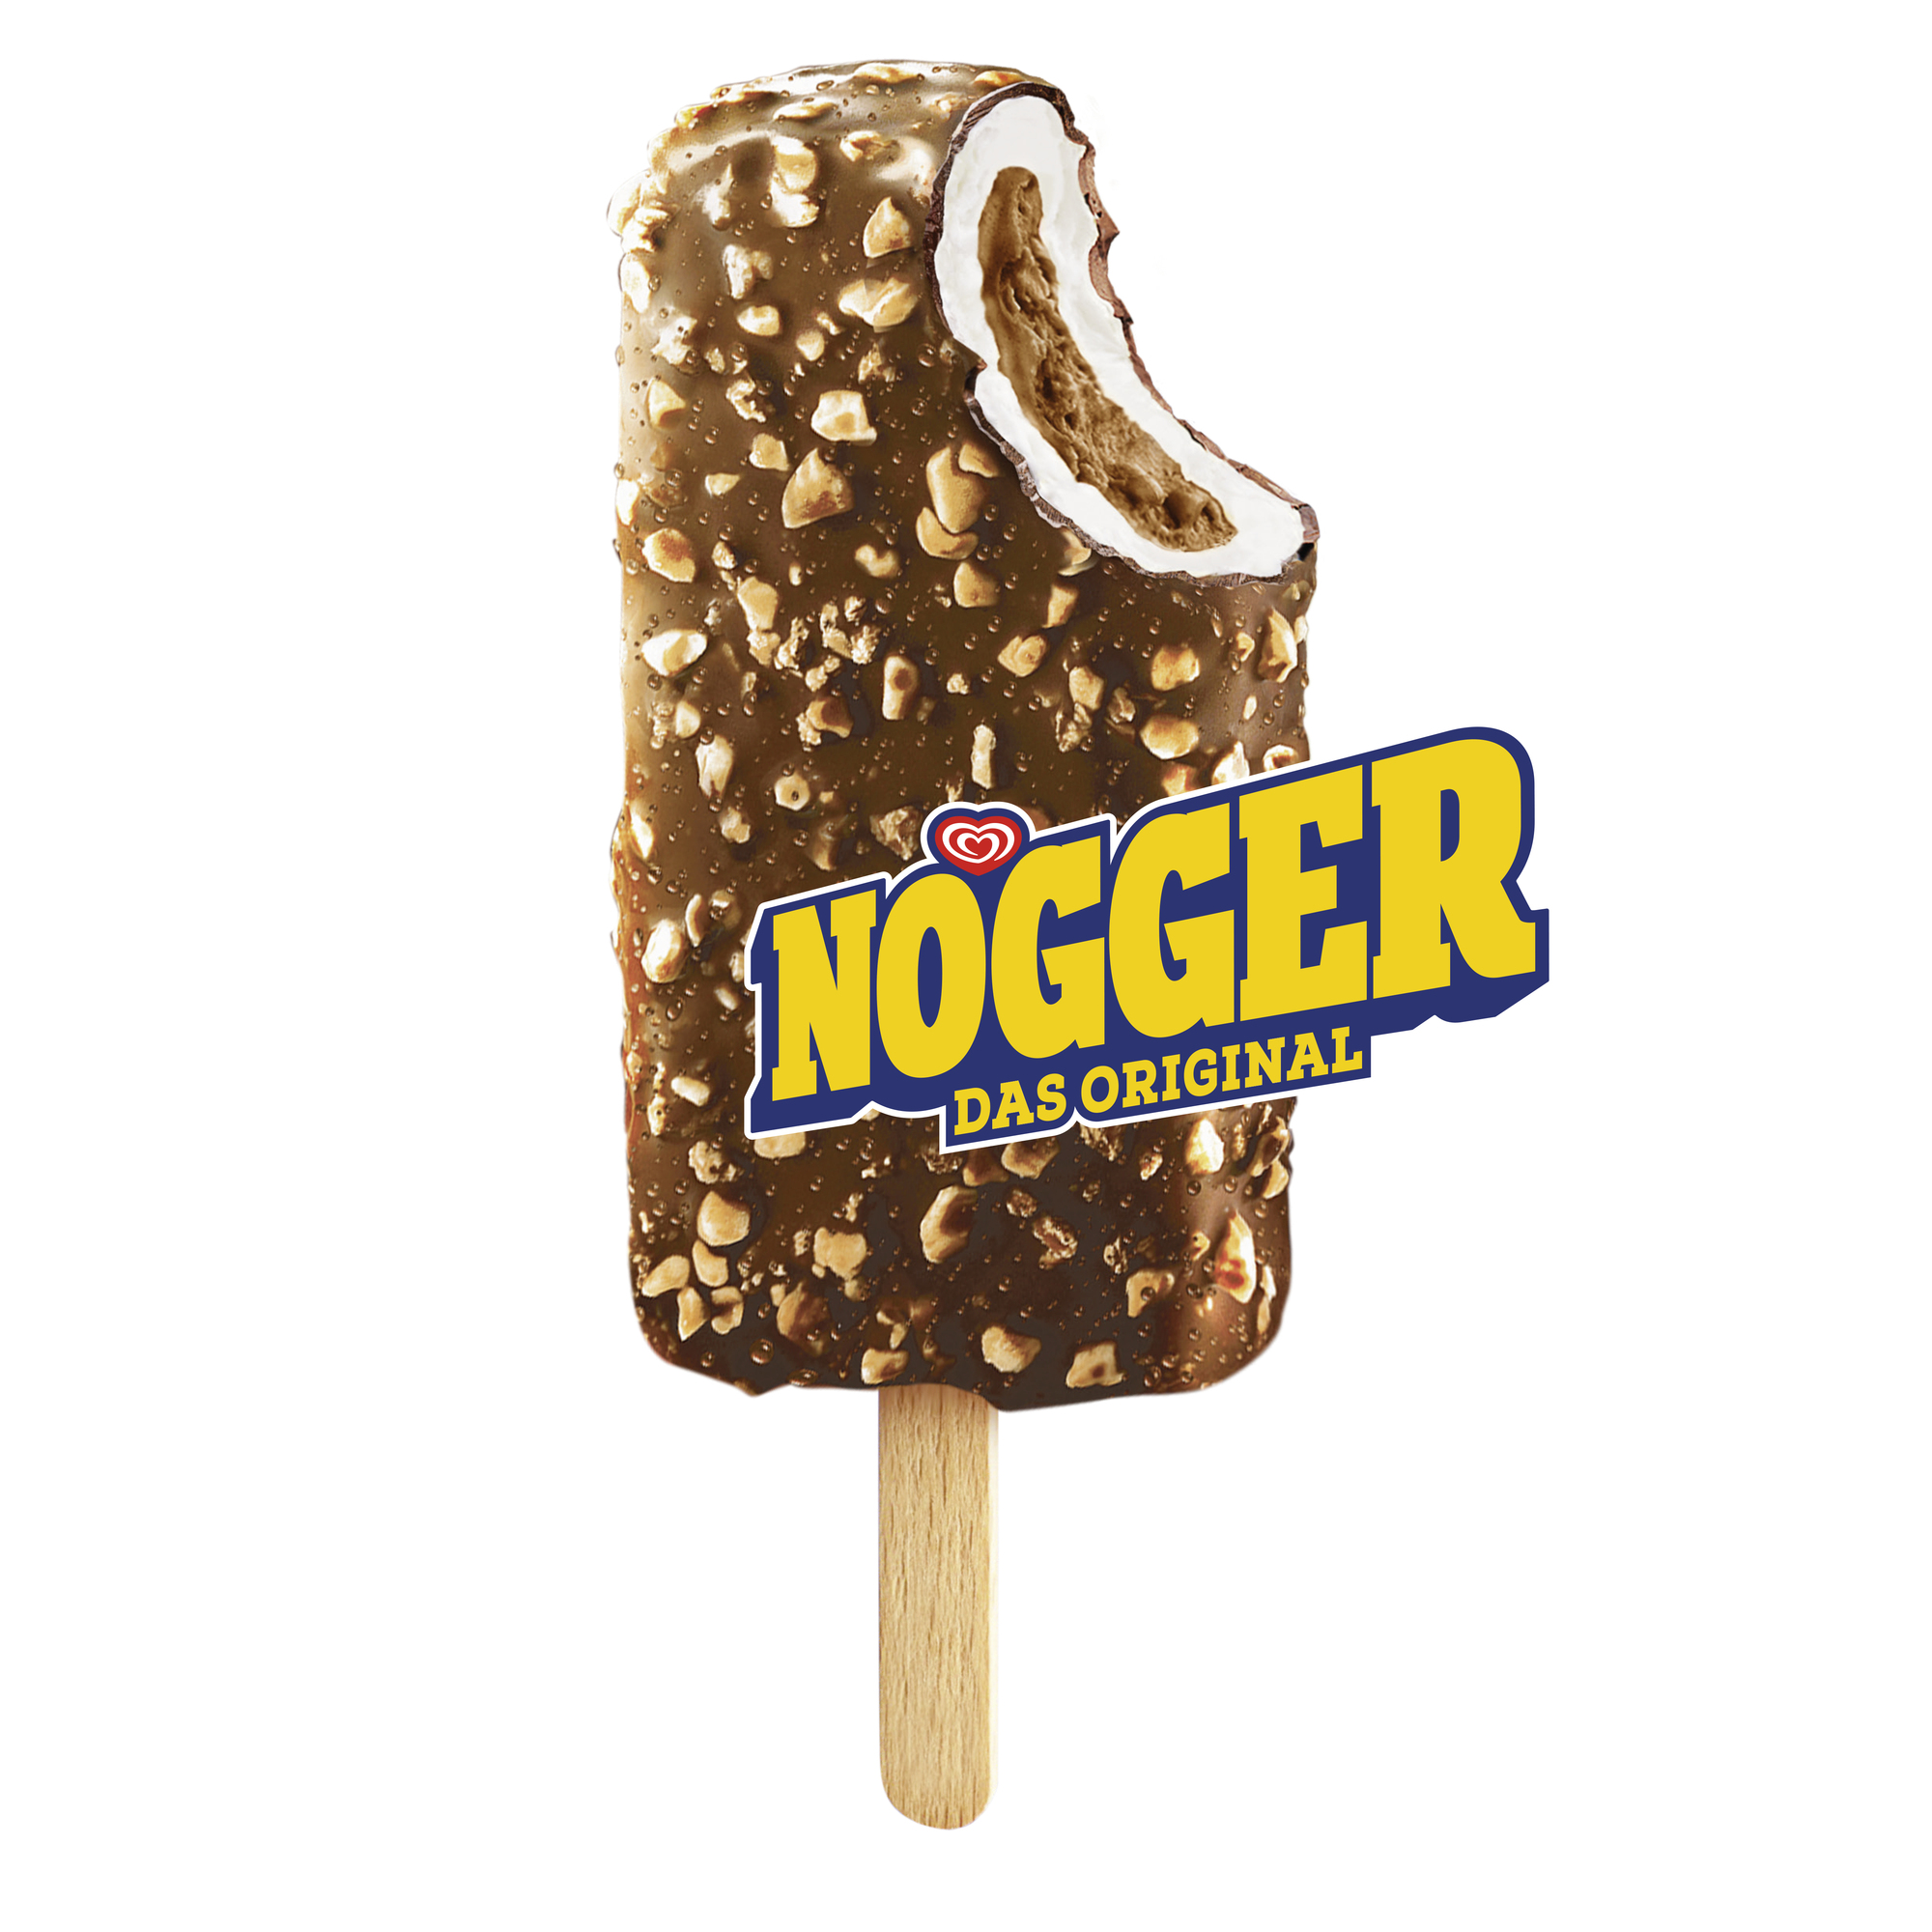 Nogger Original Eis 94ml